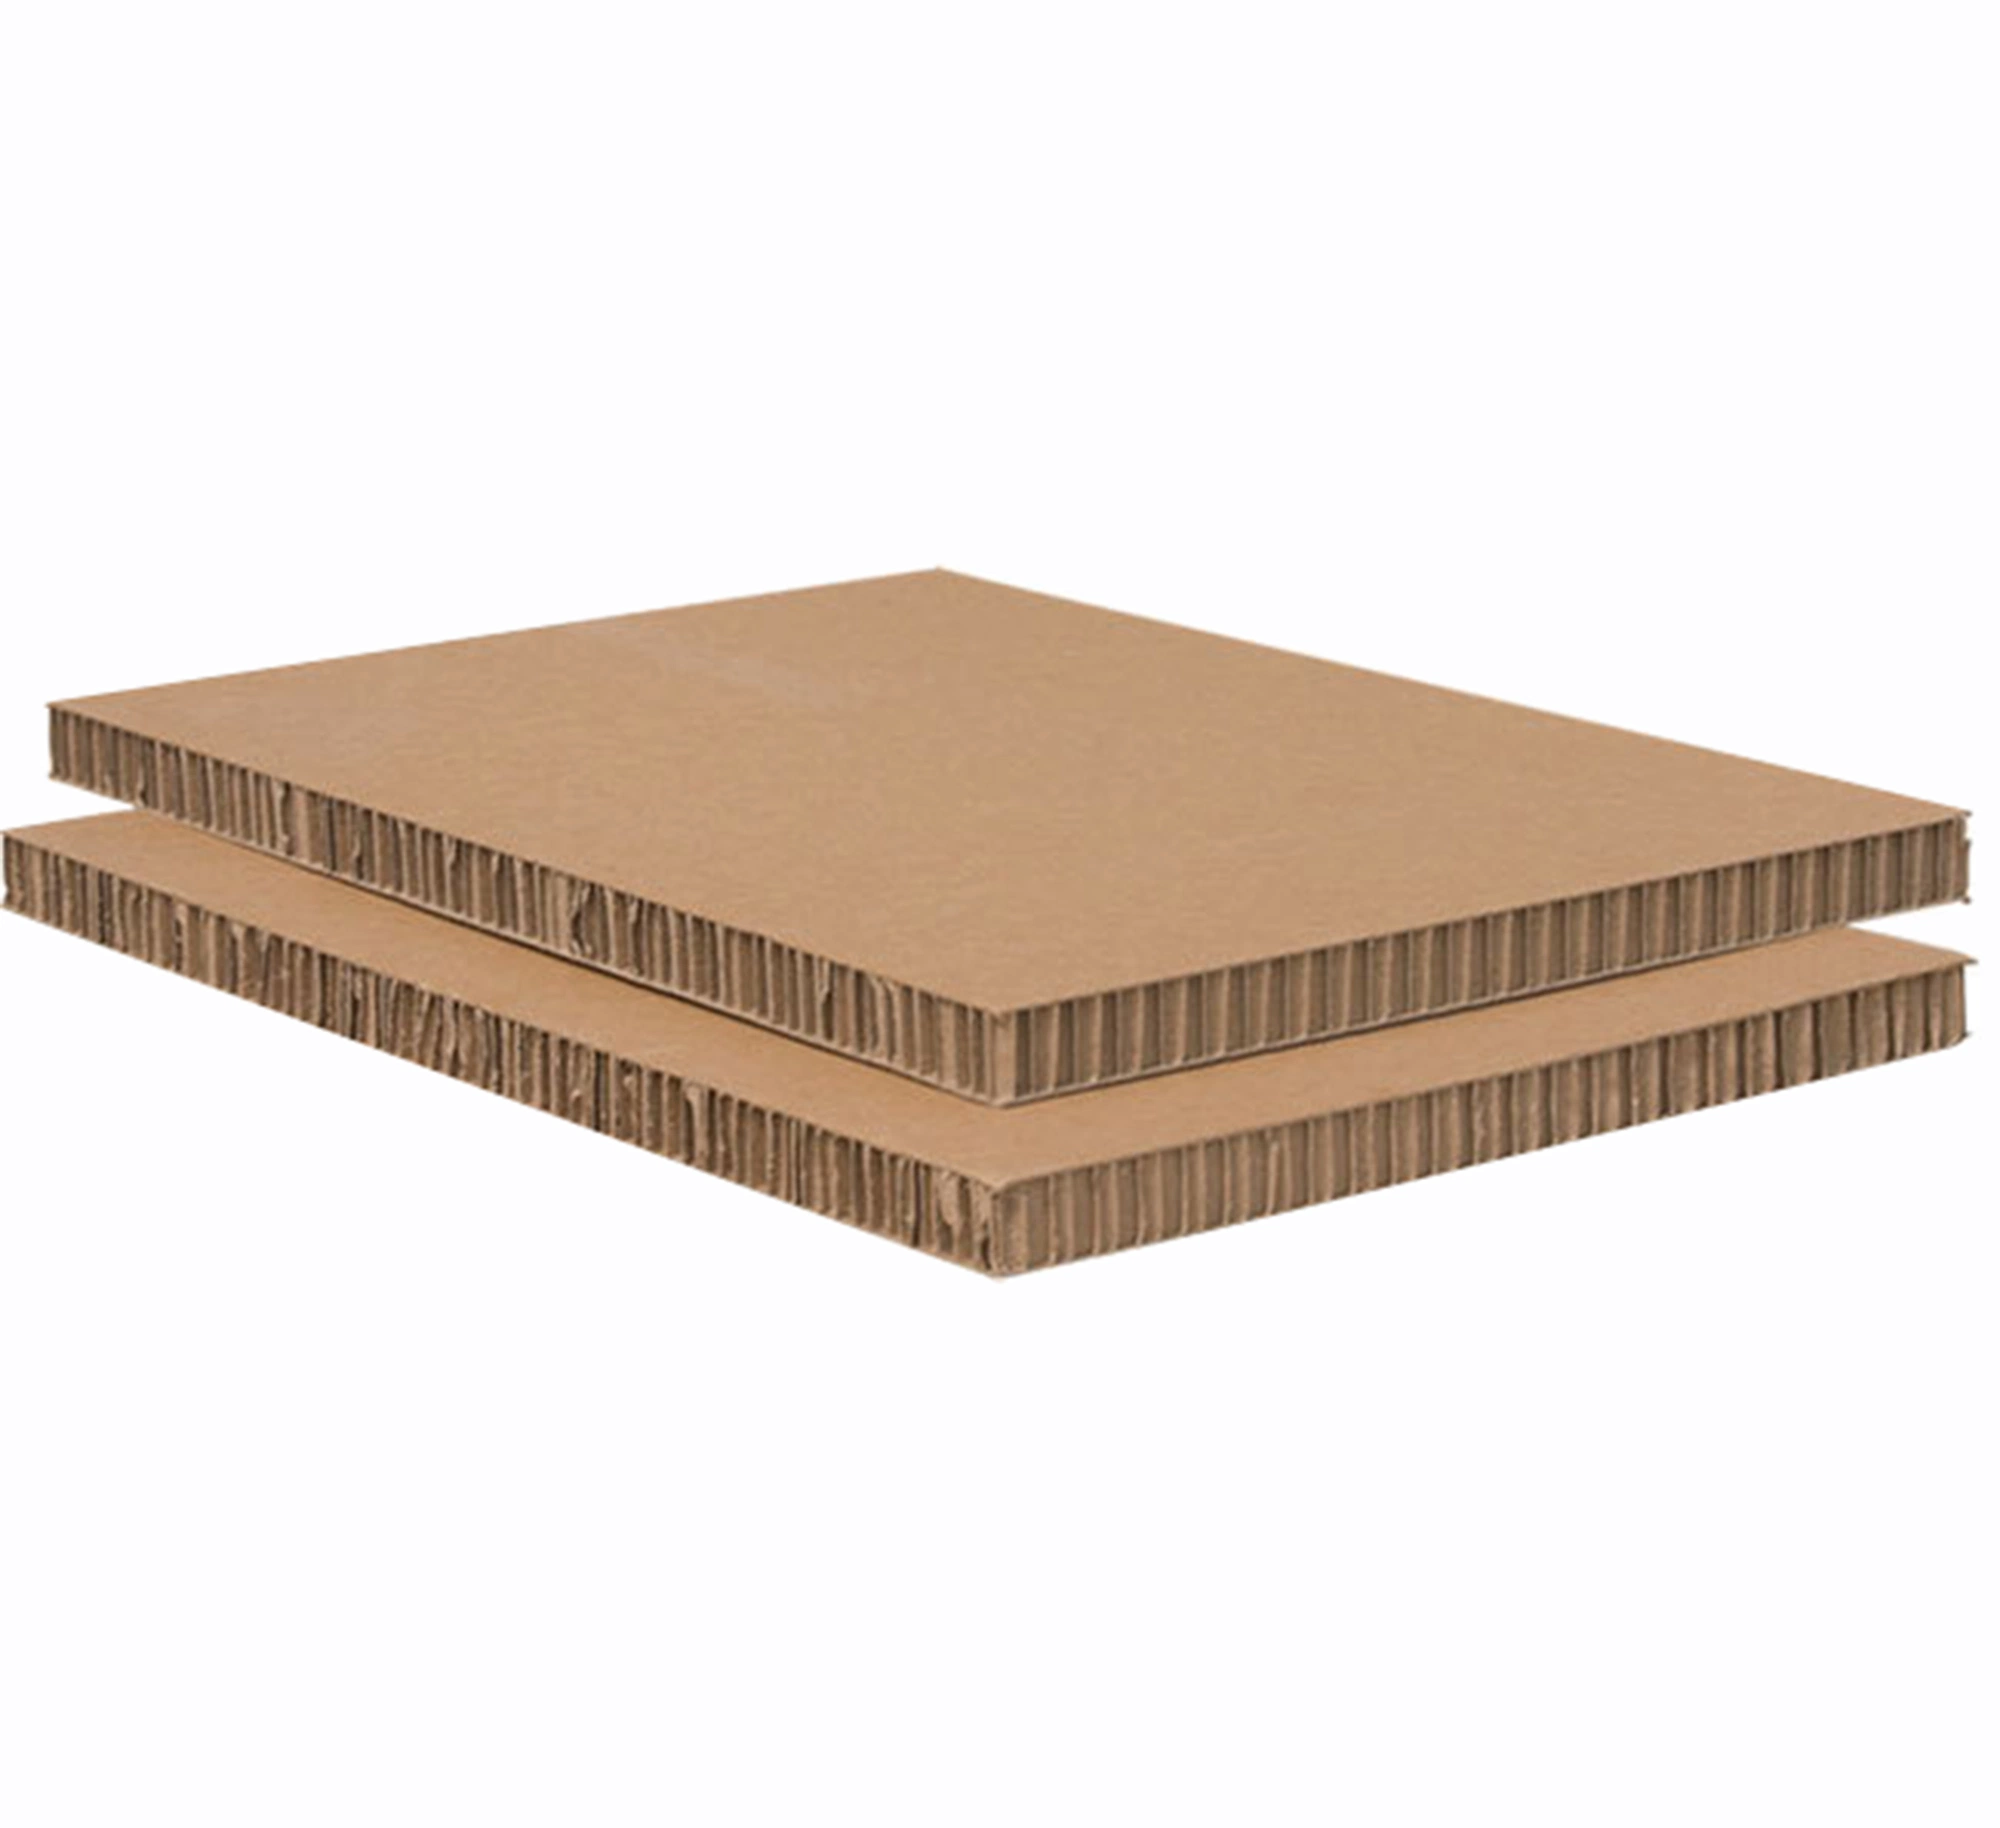 0 verticale solide en plastique du carton ondulé papier carton utilisé pour le mobilier et de support d'affichage